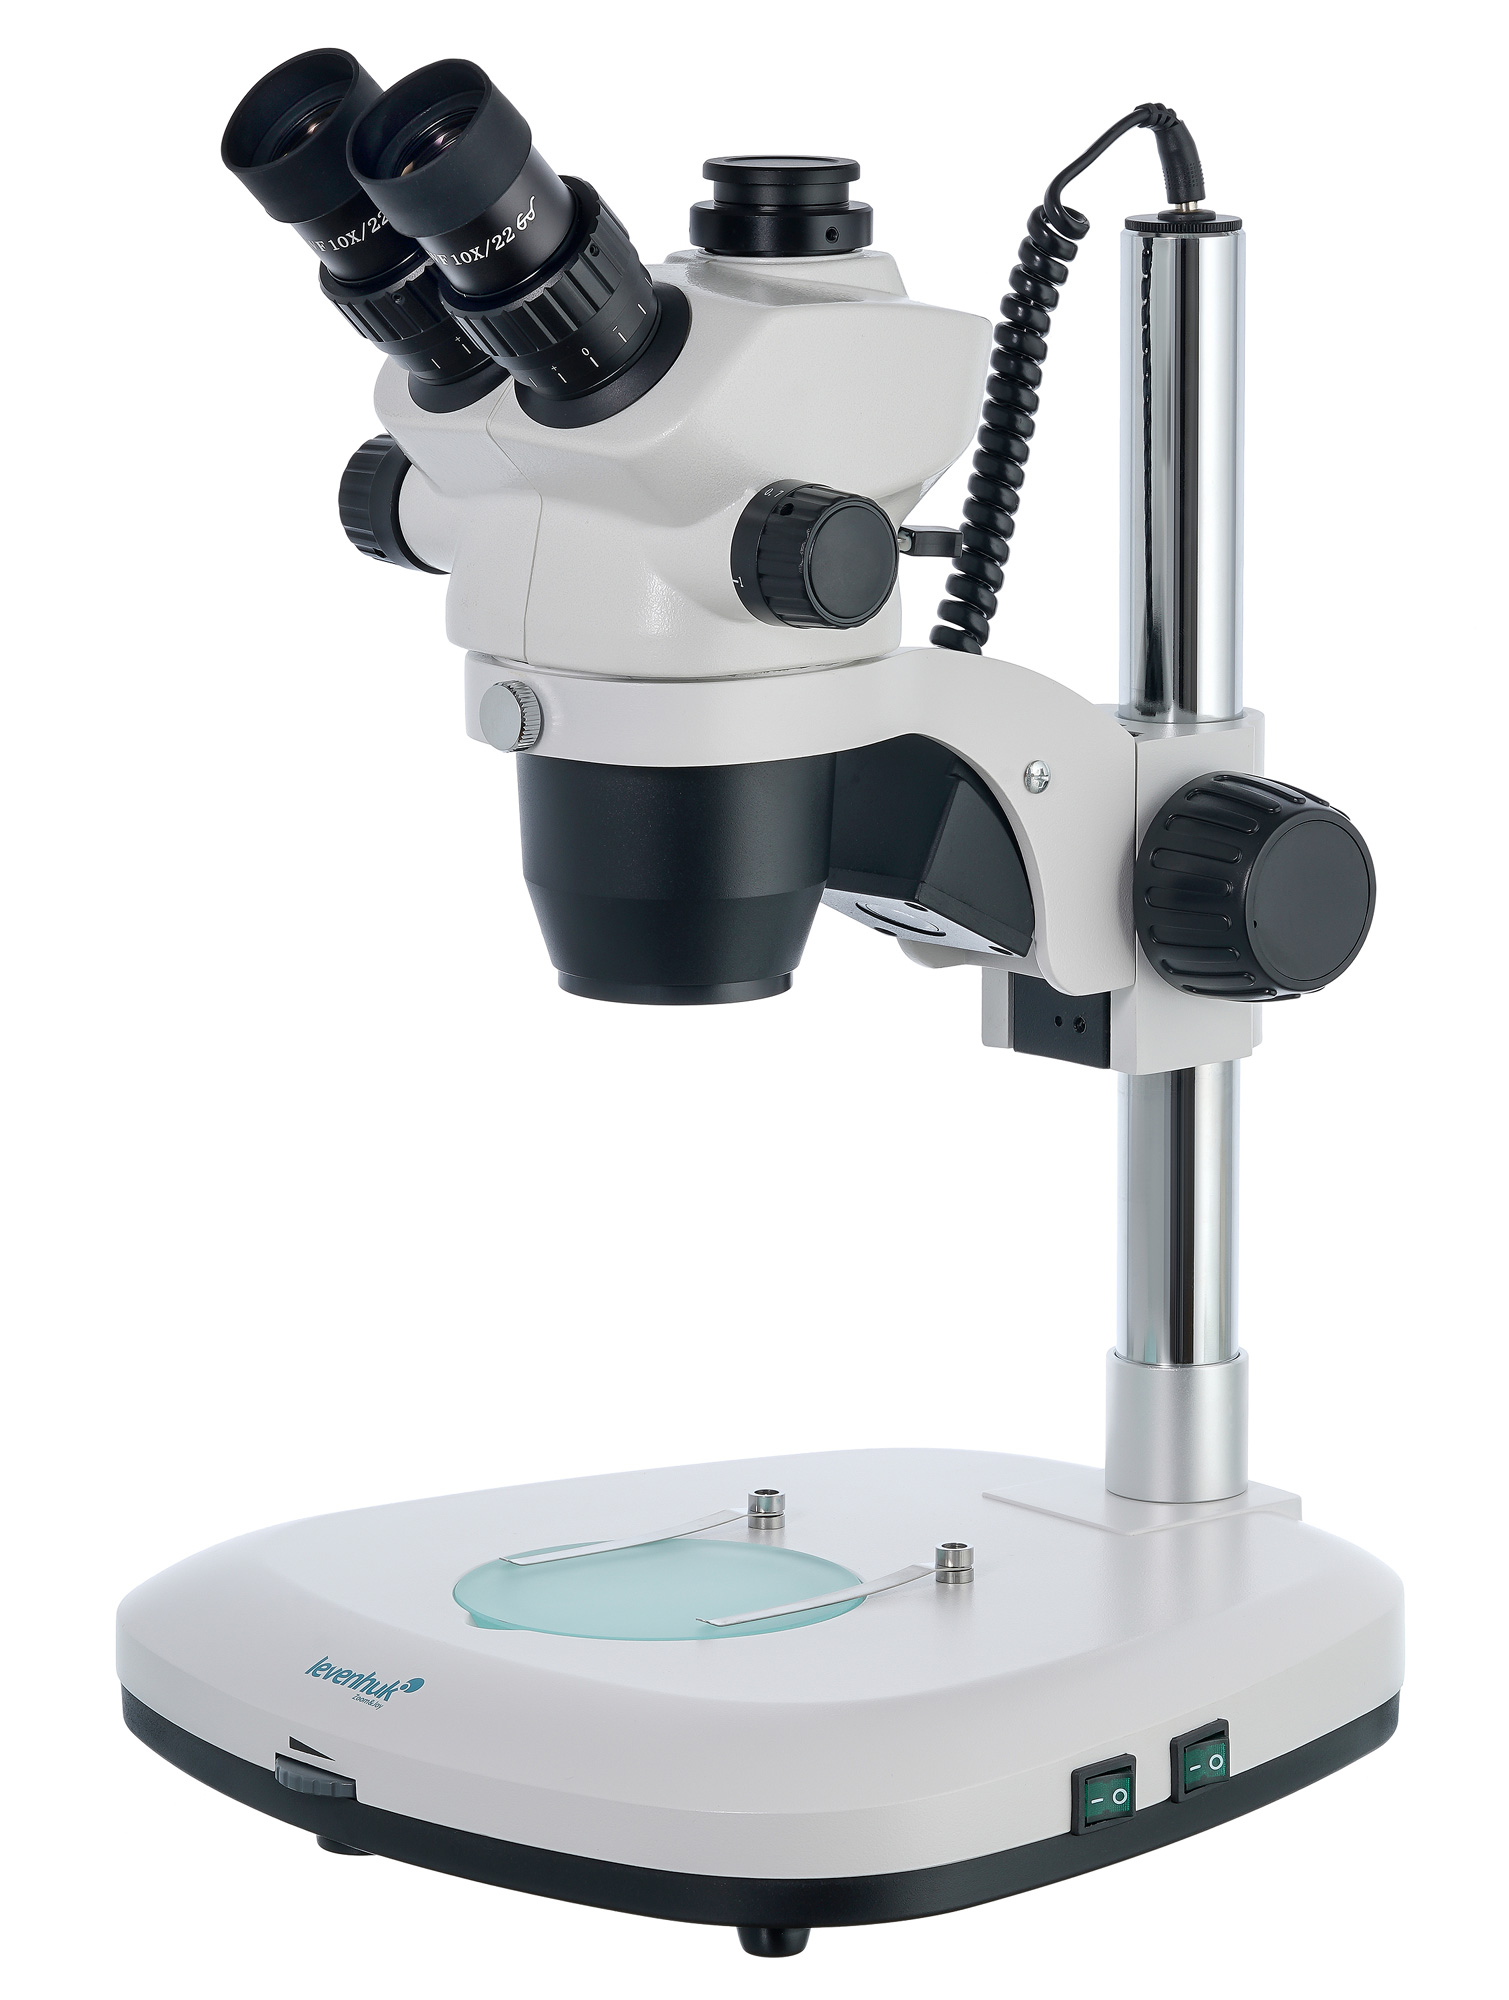 Levenhuk Zeno Cash ZC16 Pocket Microscope – Buy from the Levenhuk official  website in USA